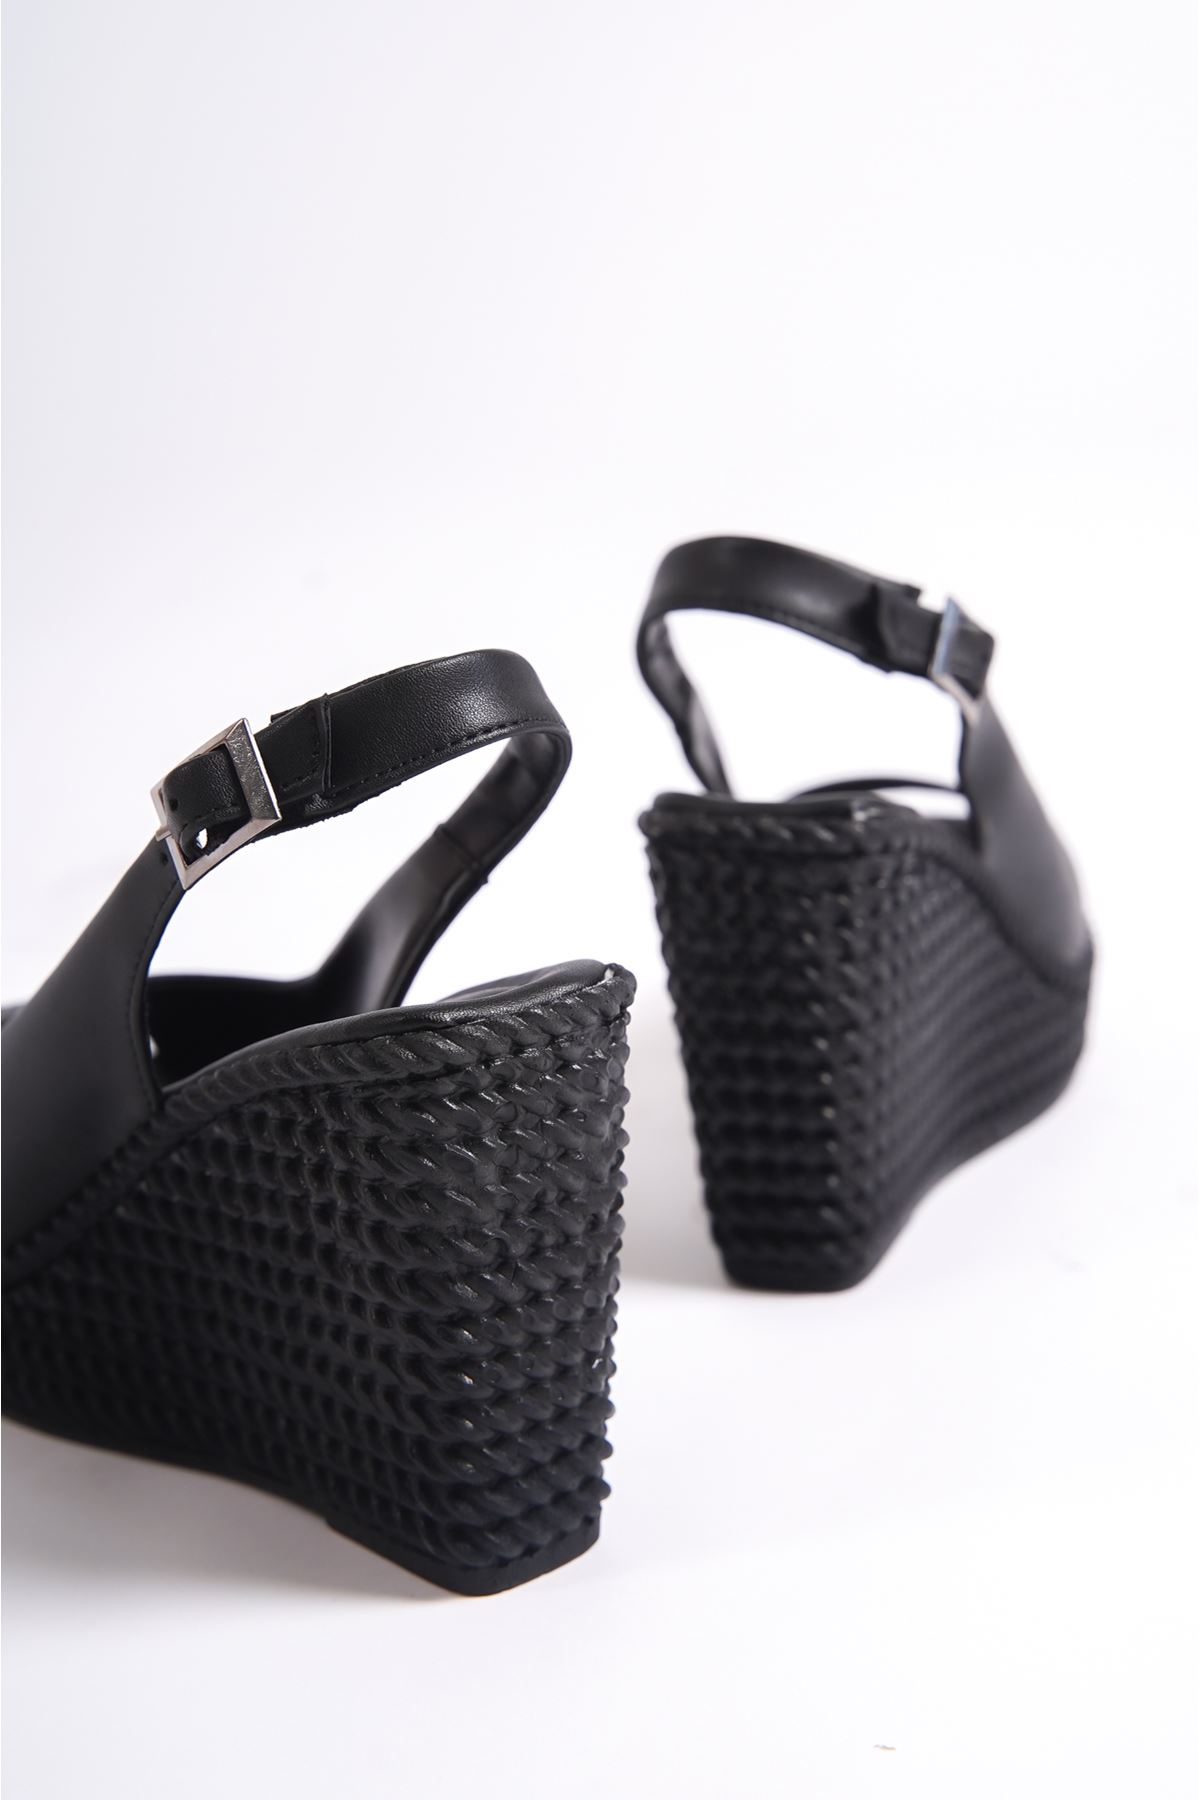 Henri Siyah Mat Deri Kadın Dolgu Topuklu Ayakkabı